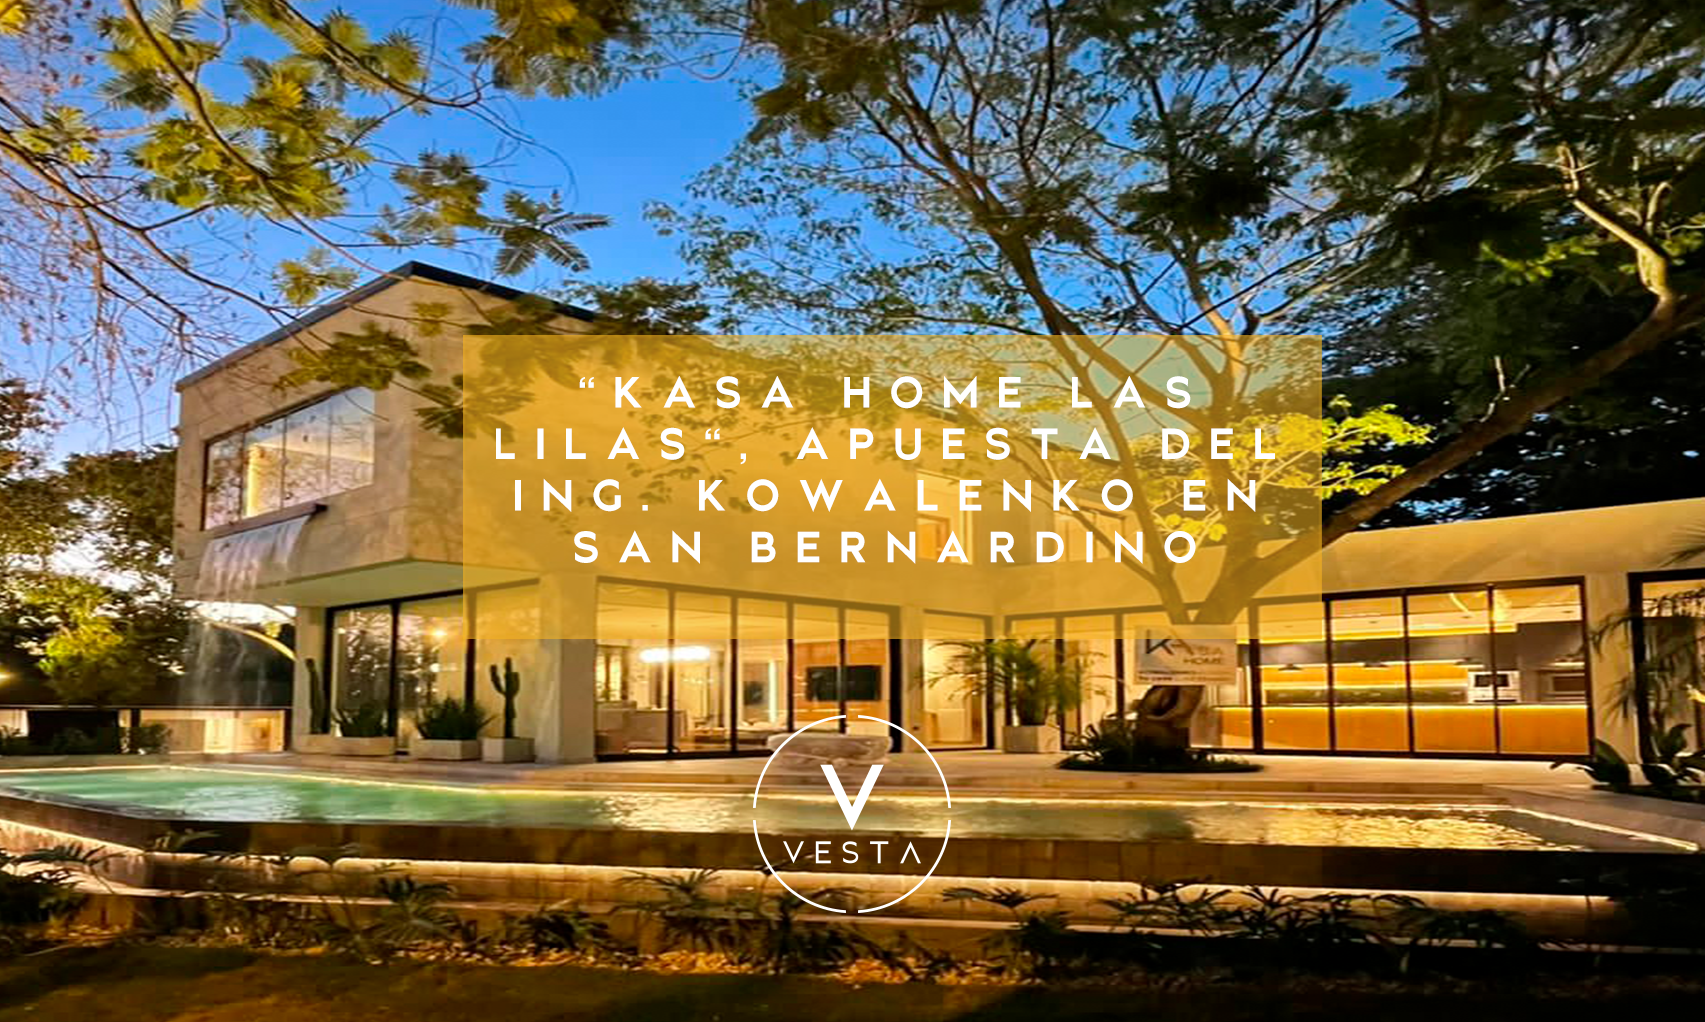 Kasa Home Las Lilas" , de la mano del Ing. Kowalenko  se presentó  la exclusiva residencia de 600m2 de construcción en San Bernardino